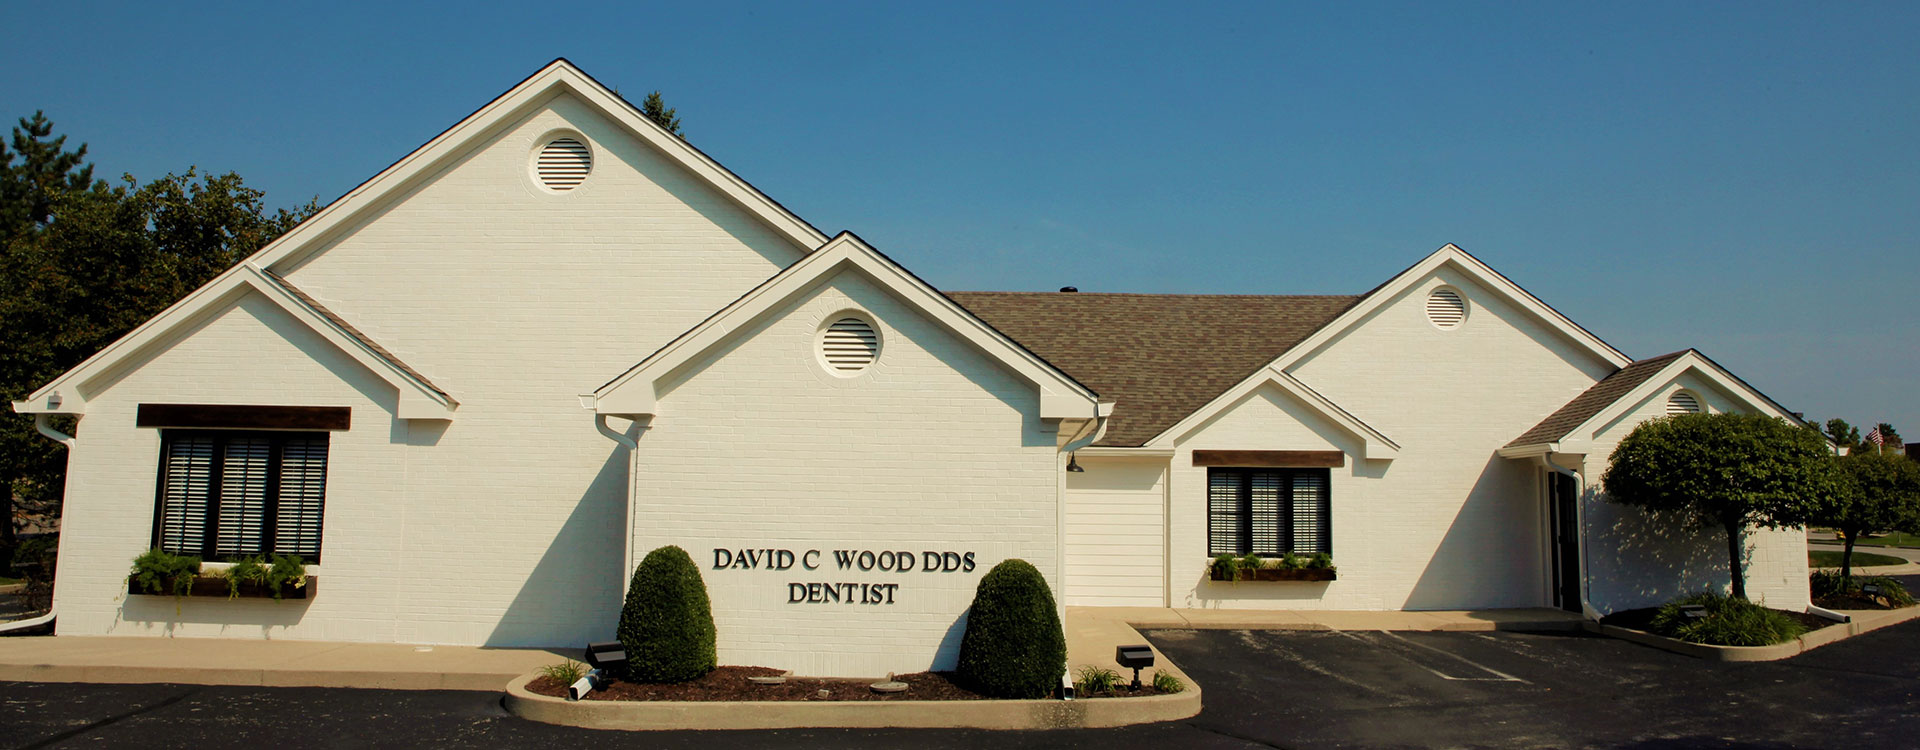 David Wood Family Dentistry Location in Carmel IN